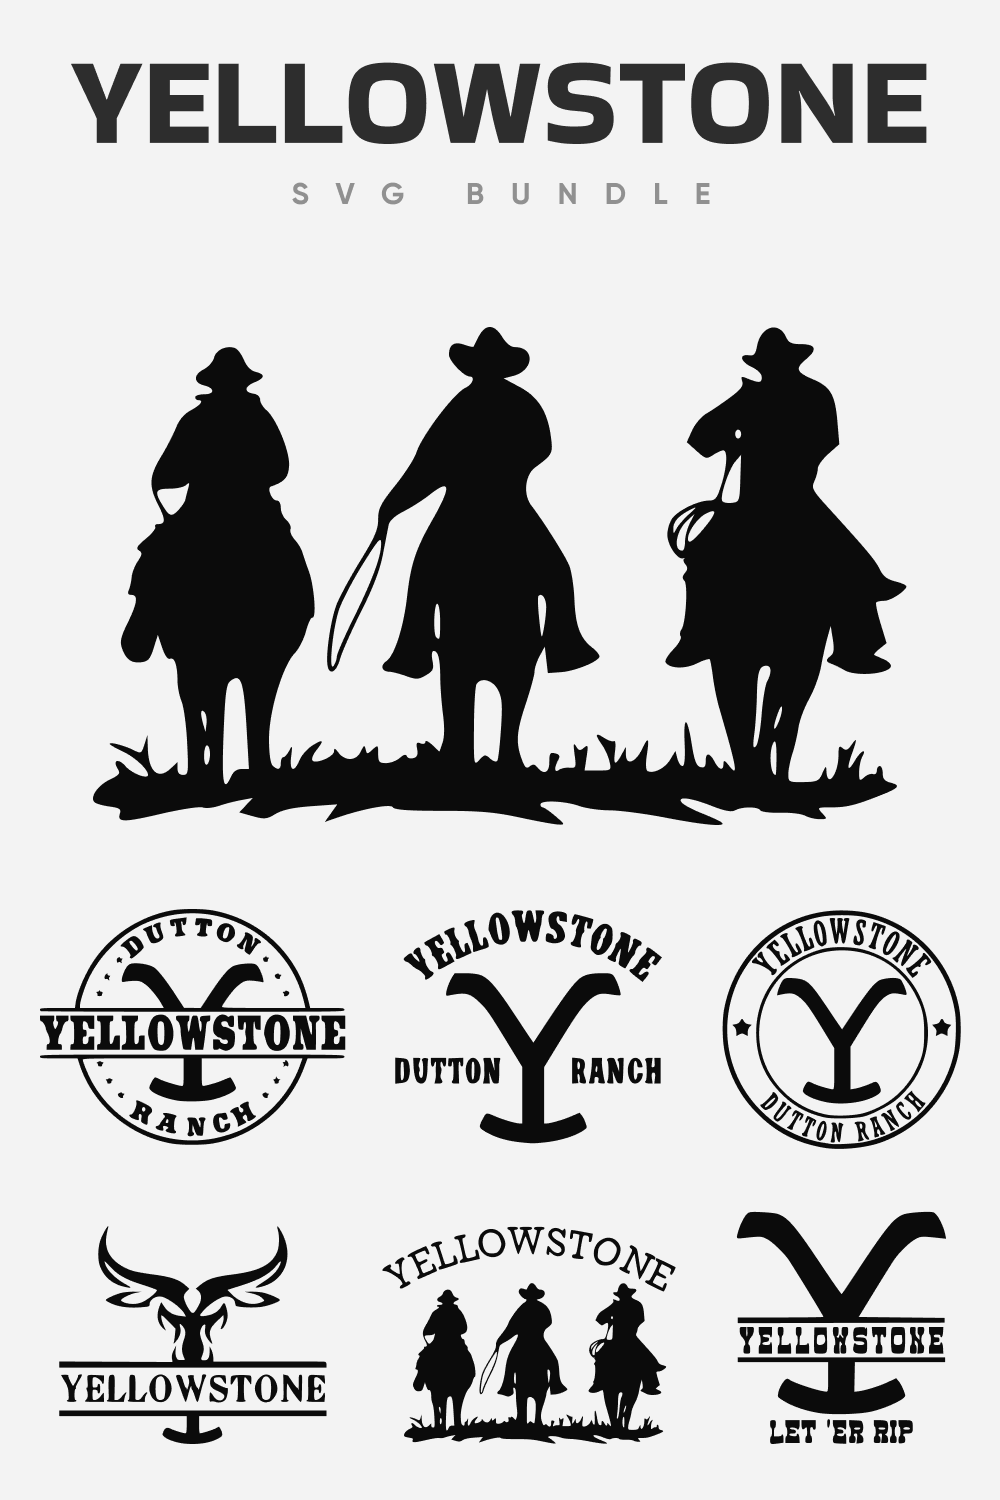 Yellowstone SVG bundle.